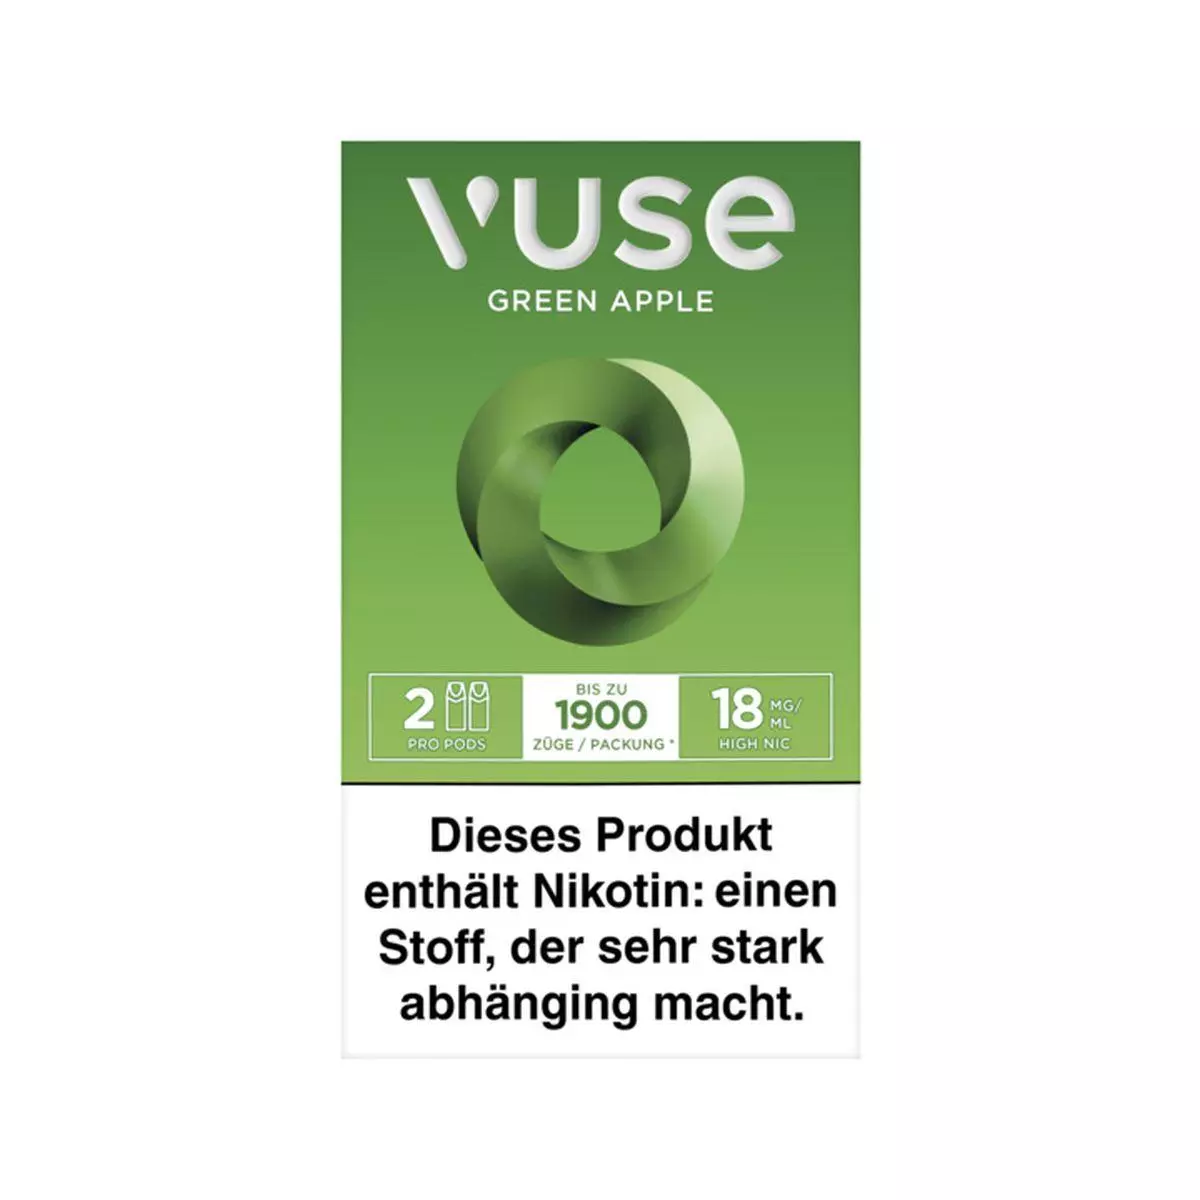 Vuse Pro Caps Green Apple 18mg/ml 1 x 2 Caps